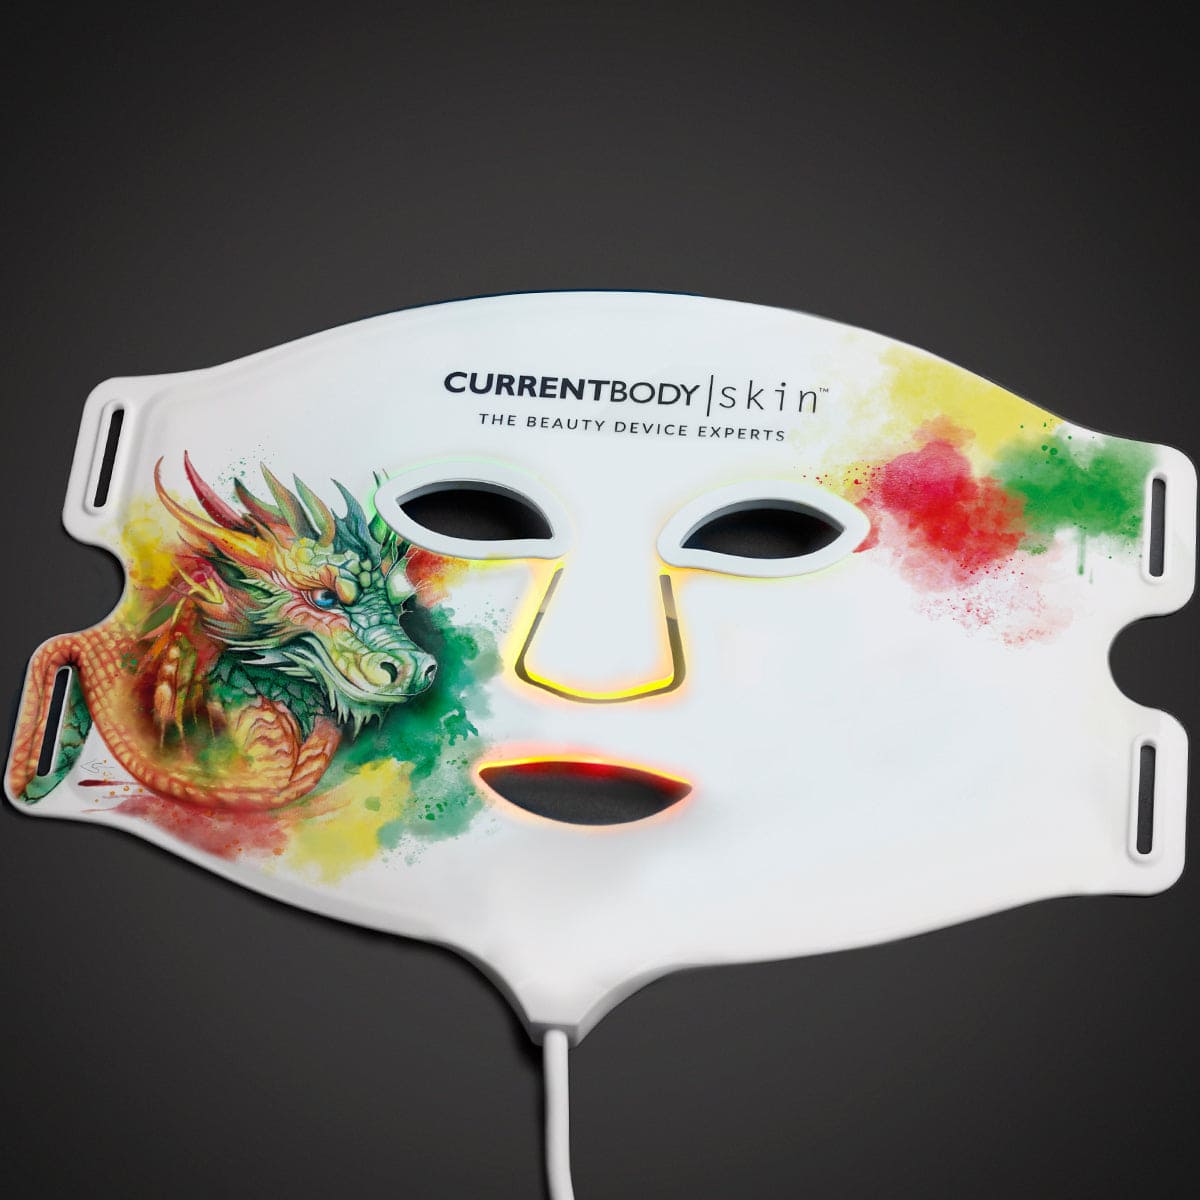 CurrentBody Skin LED 4イン1 マスク 限定デザイン - ドラゴン